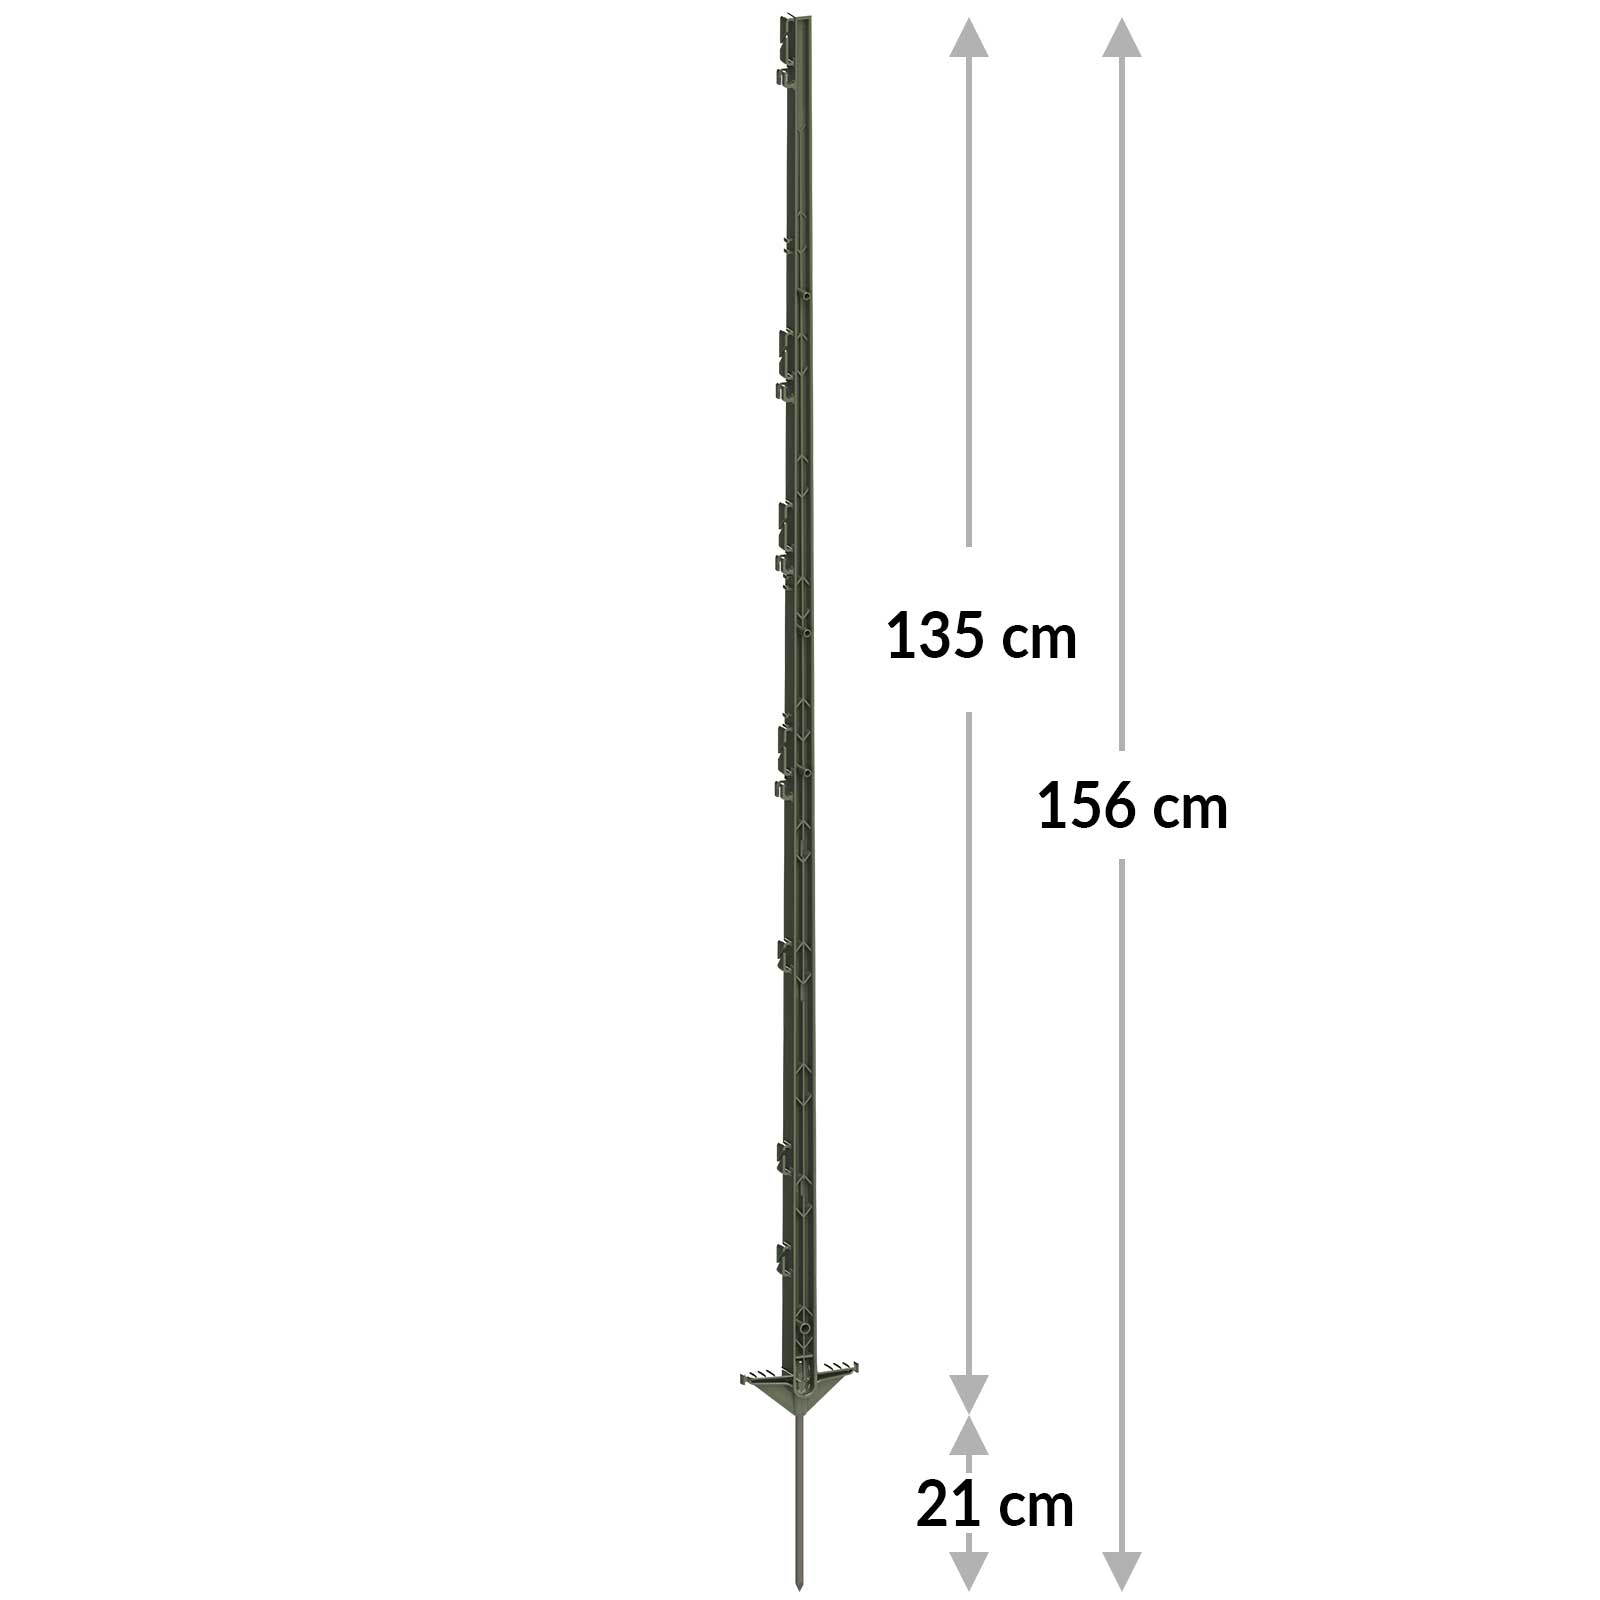 5x AKO Paletto in plastica Classic, 156 cm, doppio predellino, verde